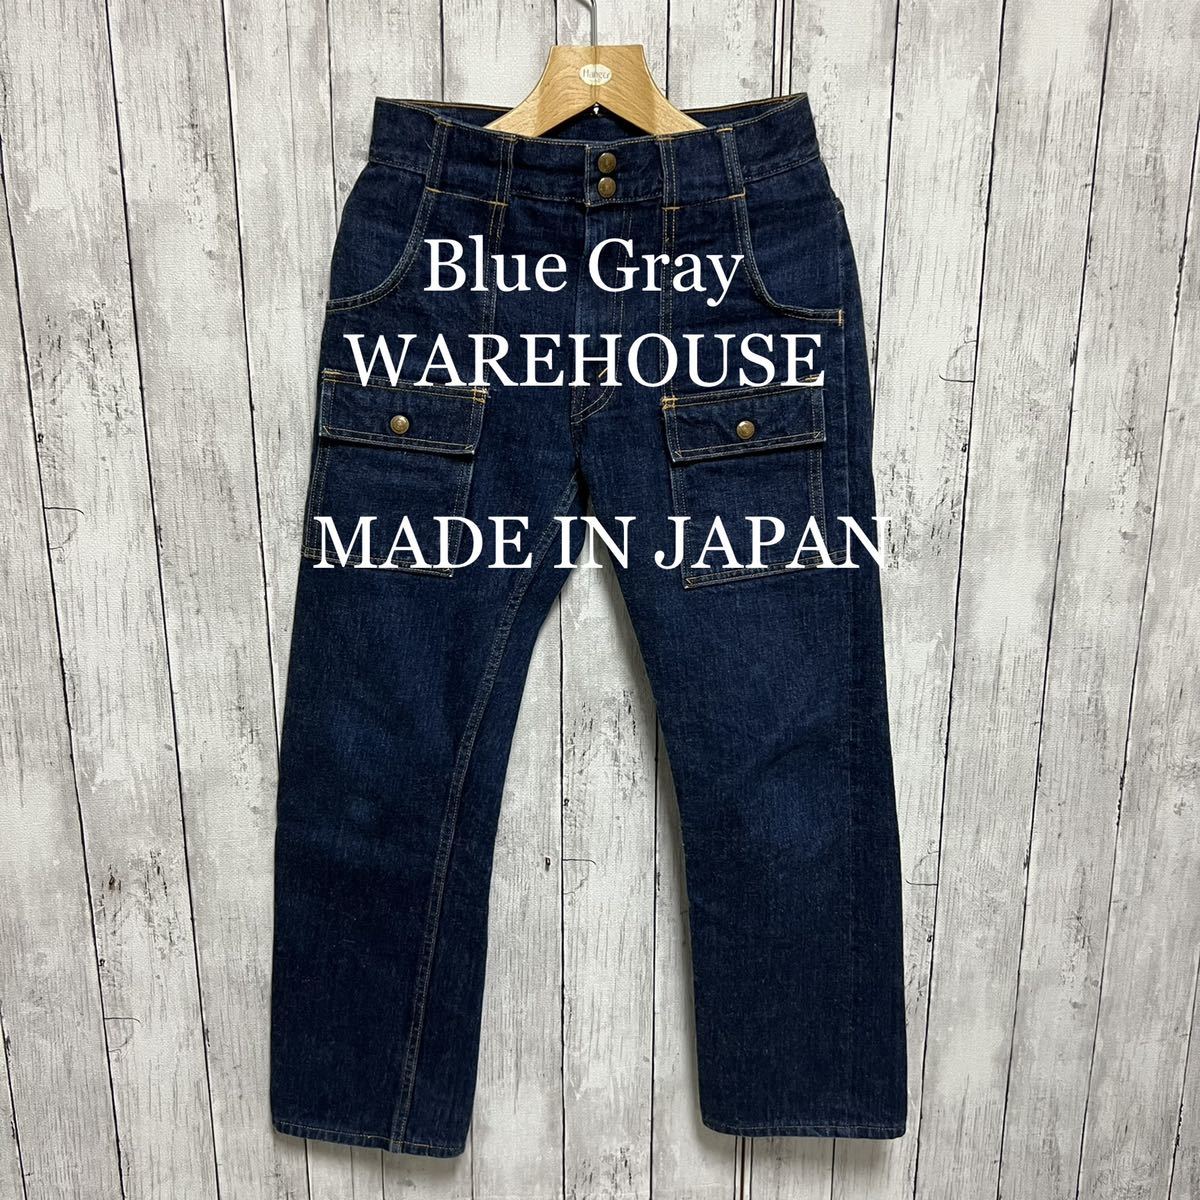  прекрасный товар!WAREHOUSE×Blue Gray Denim втулка брюки! сделано в Японии!